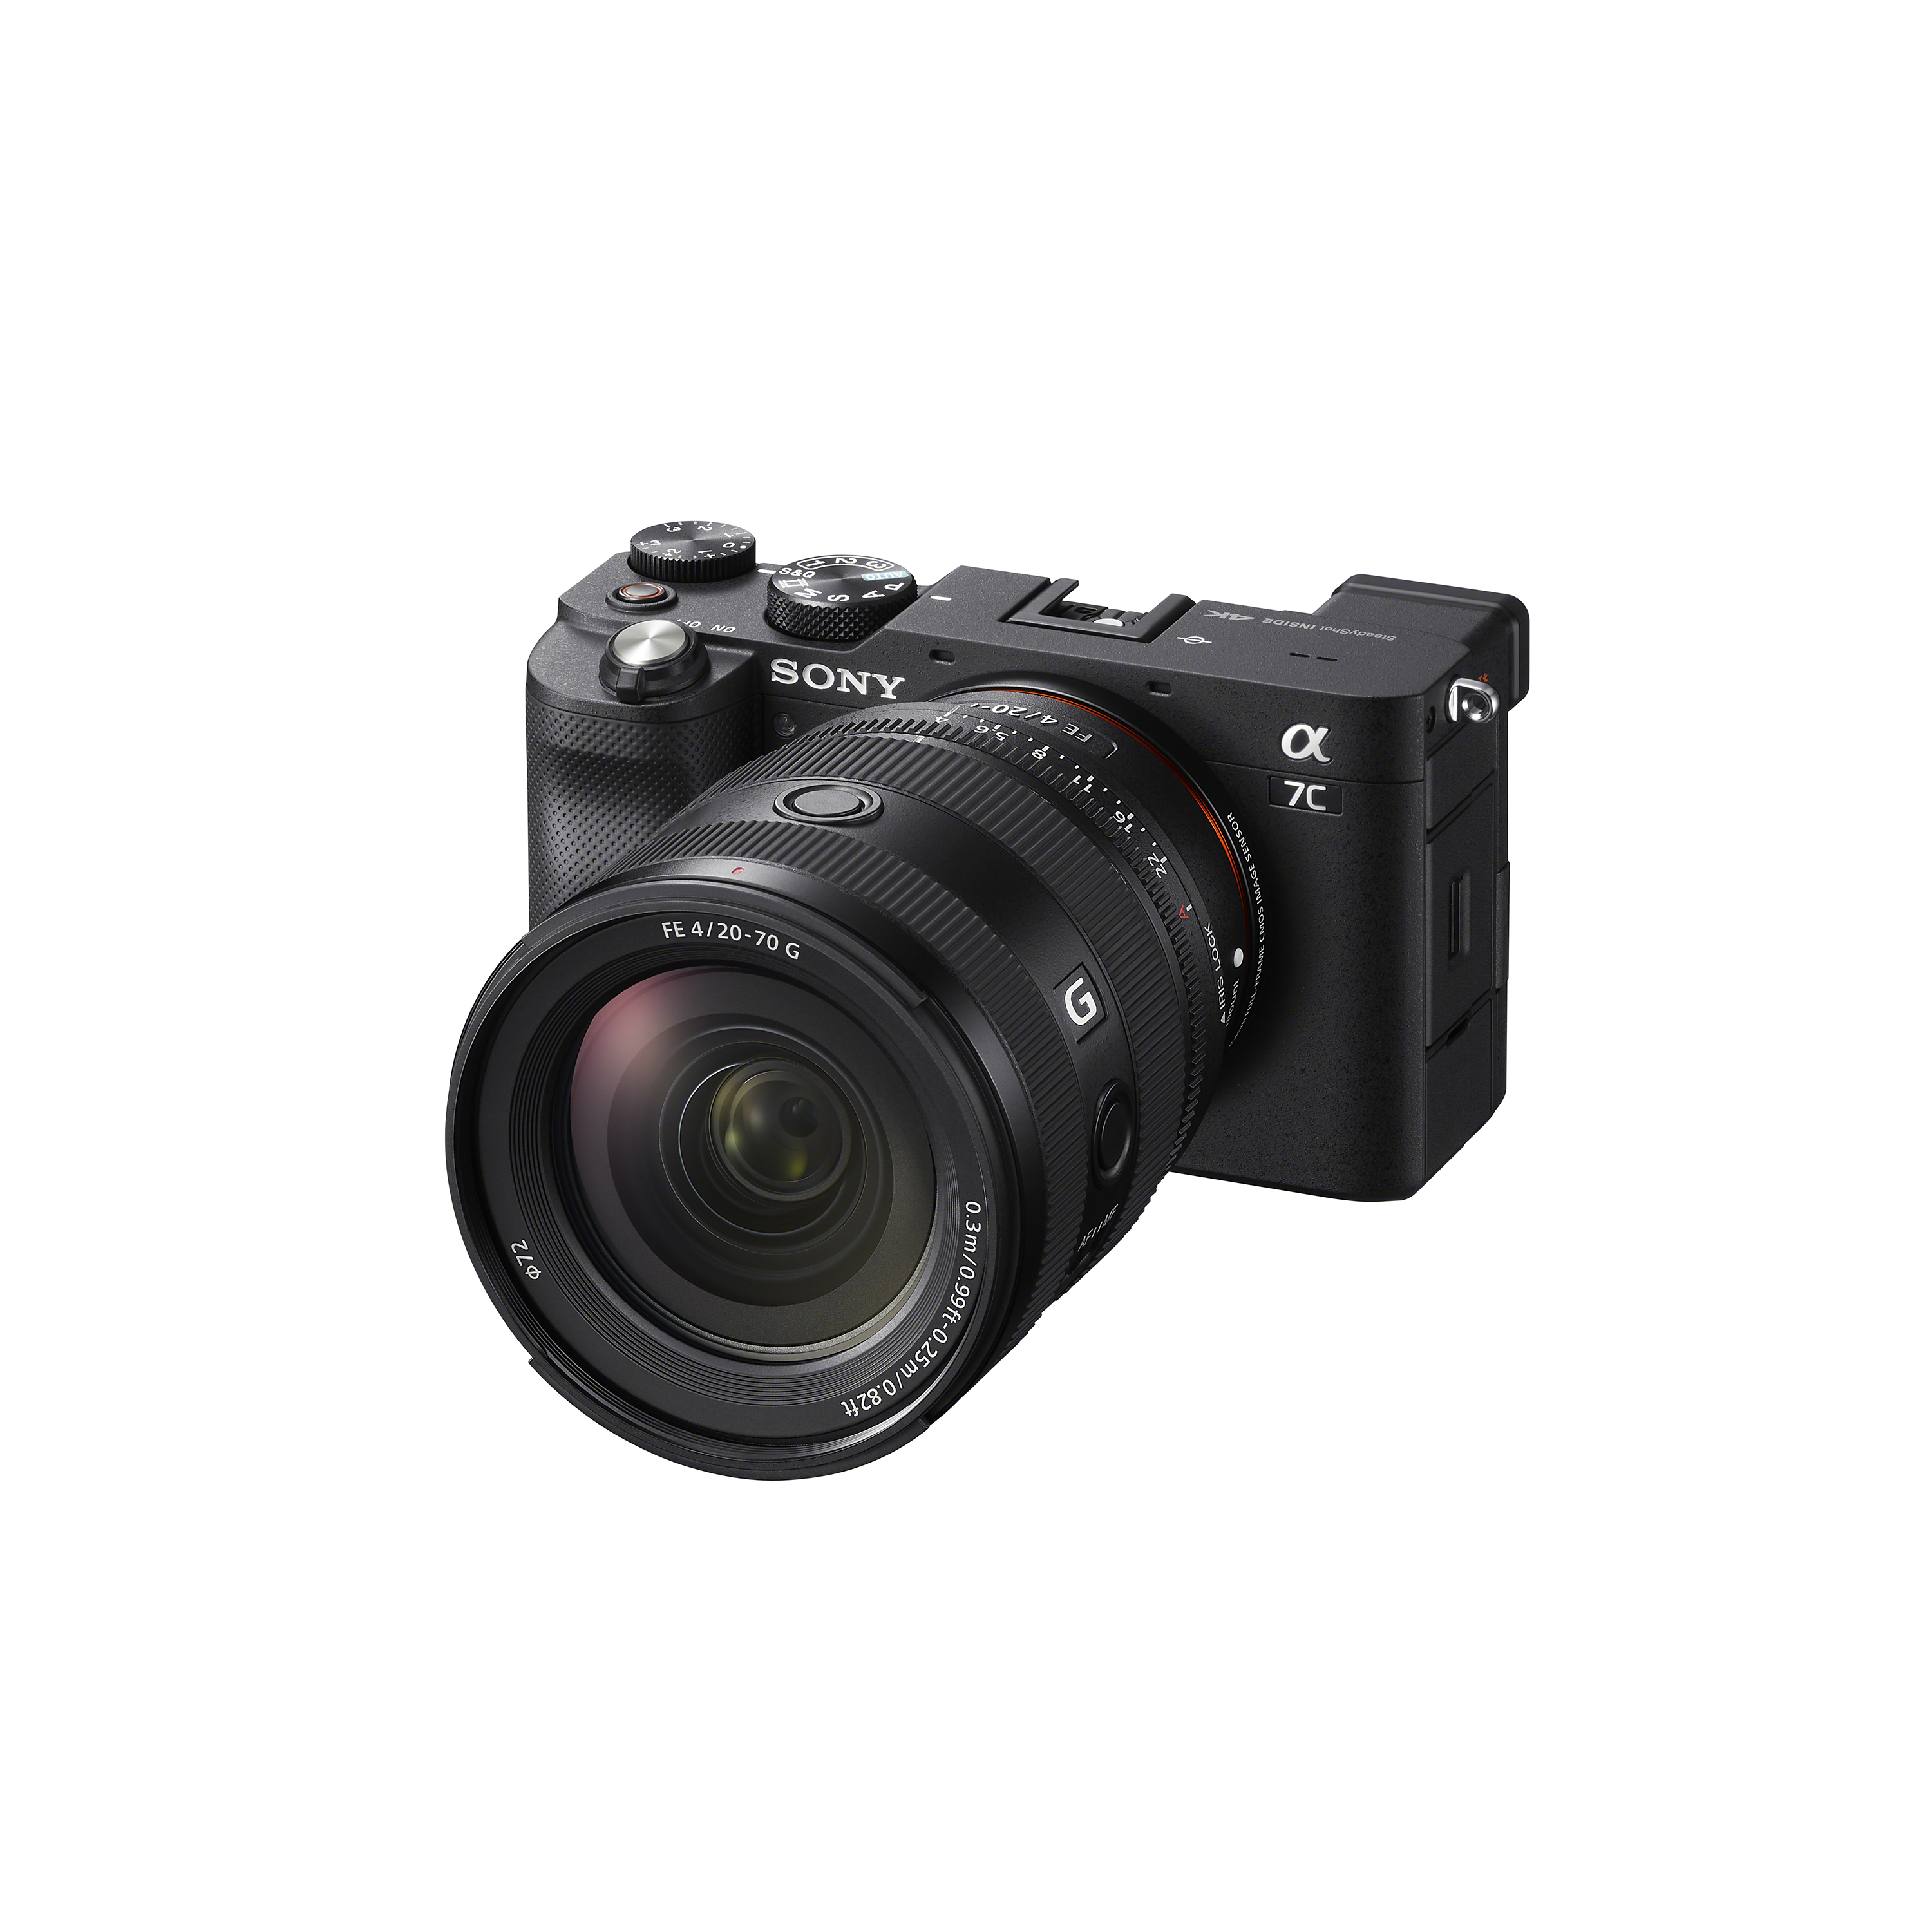 SEL2070G鏡頭裝在ILCE-7C單眼相機上